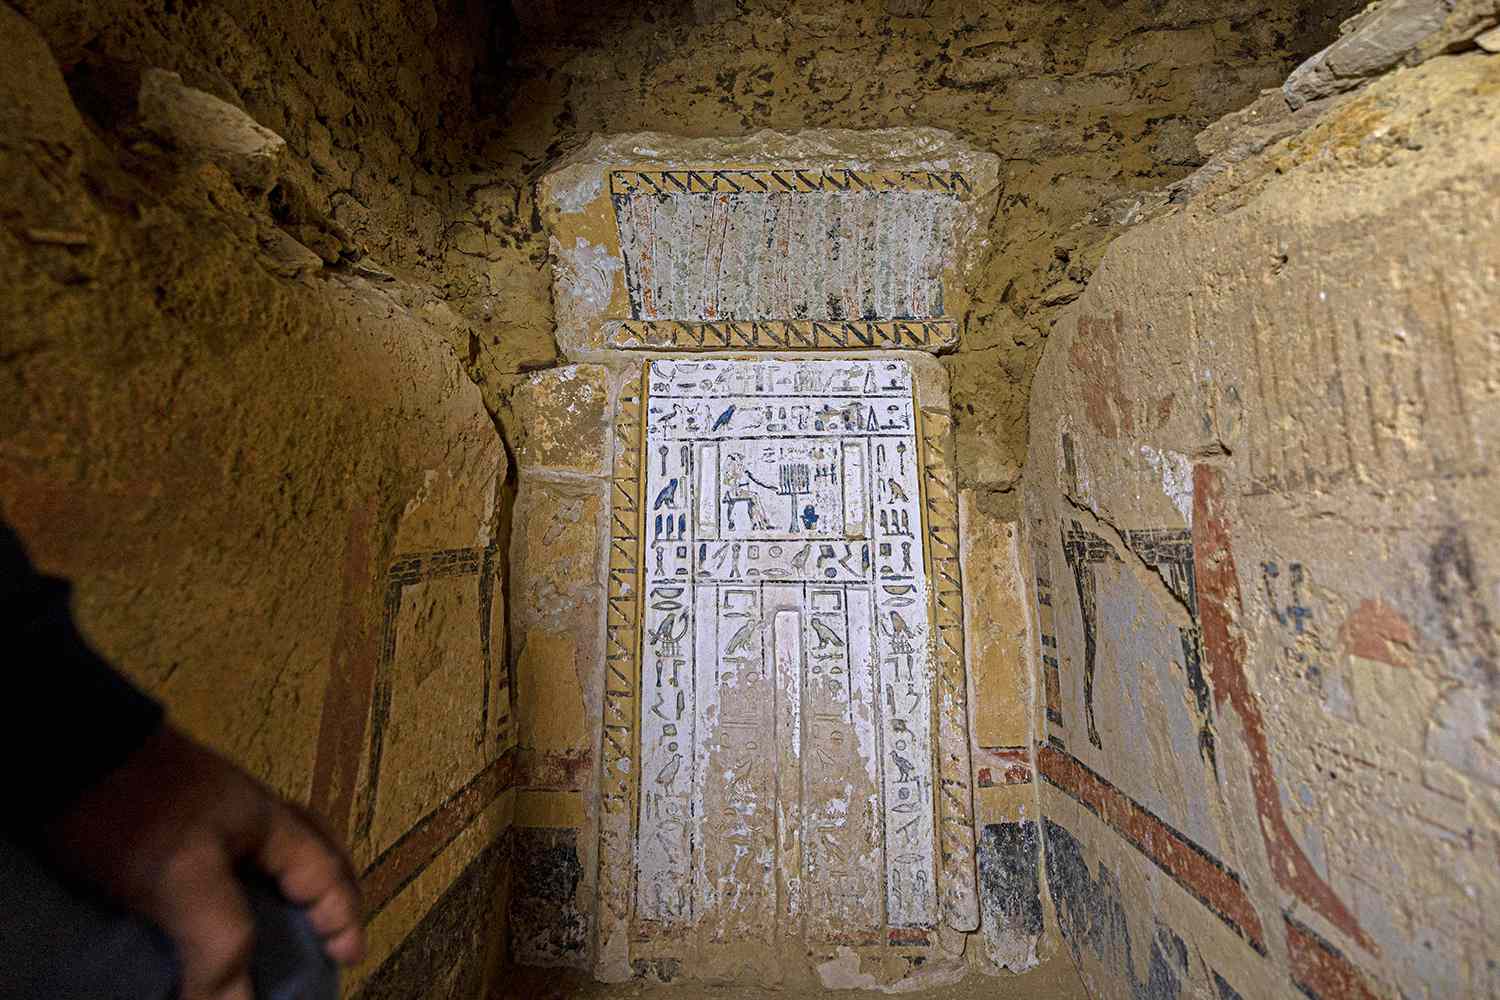 Eine 4.300 Jahre alte, mit Gold überzogene Mumie gehört zu den schillernden Entdeckungen, die an der ägyptischen Stätte gemacht wurden